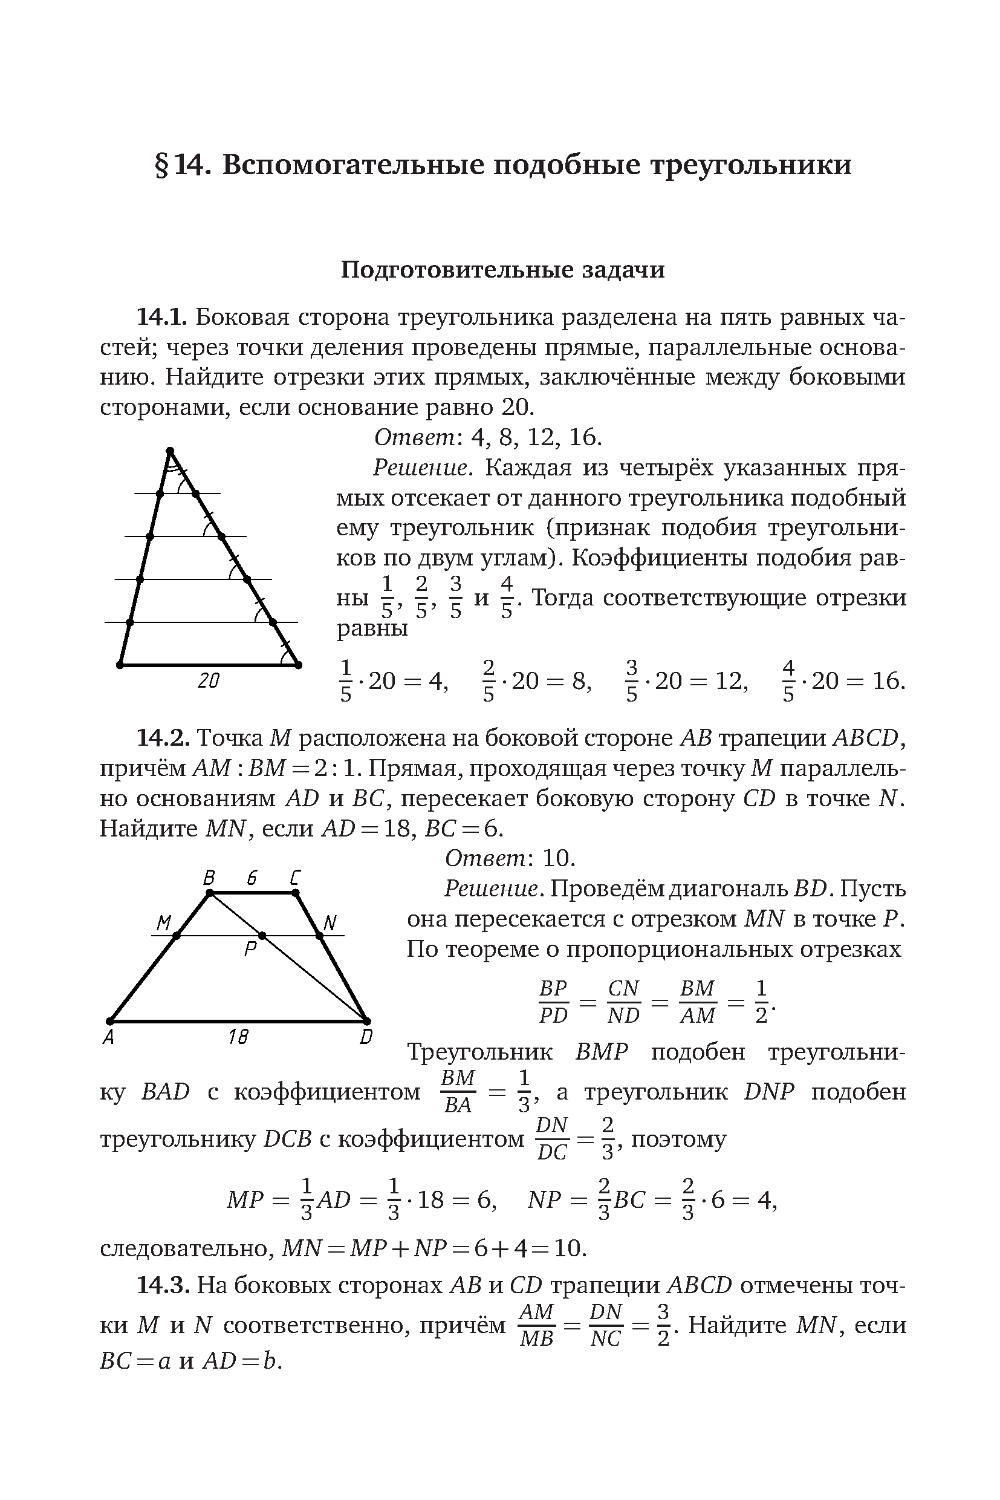 § 14. Вспомогательные подобные треугольники